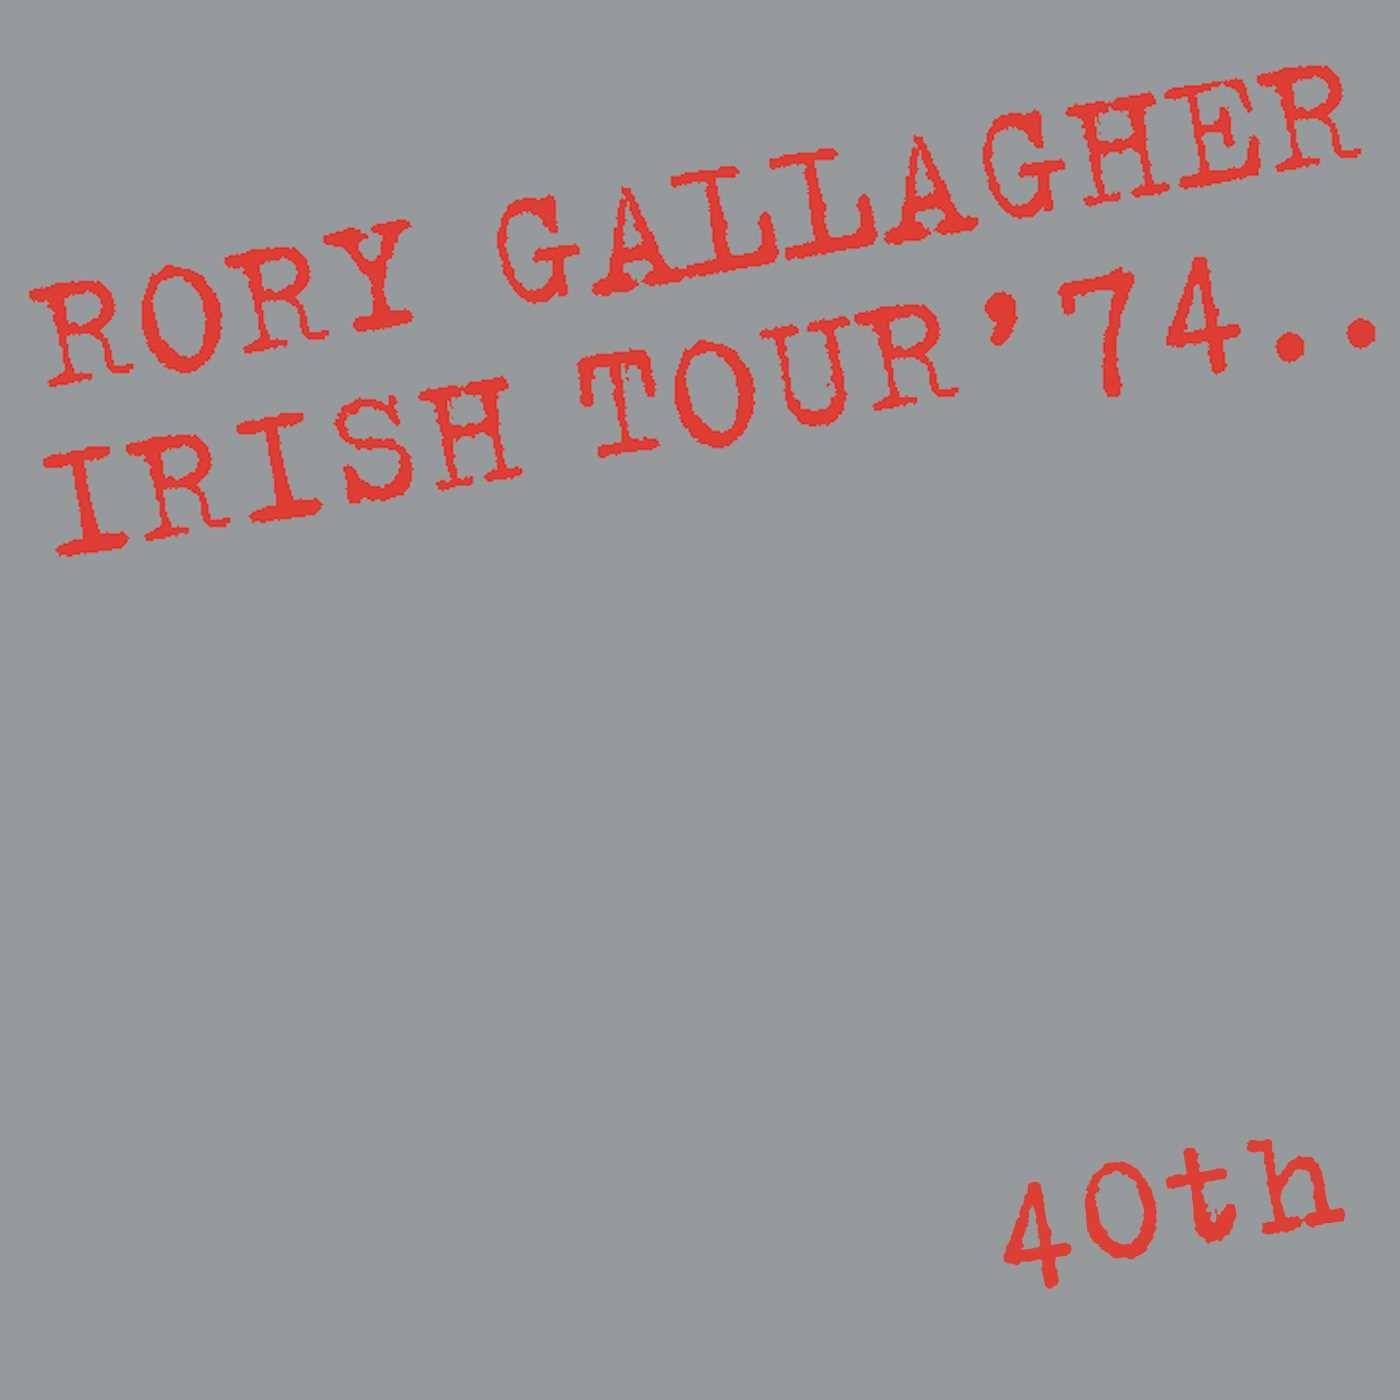 Book Cover Irish Tour 74